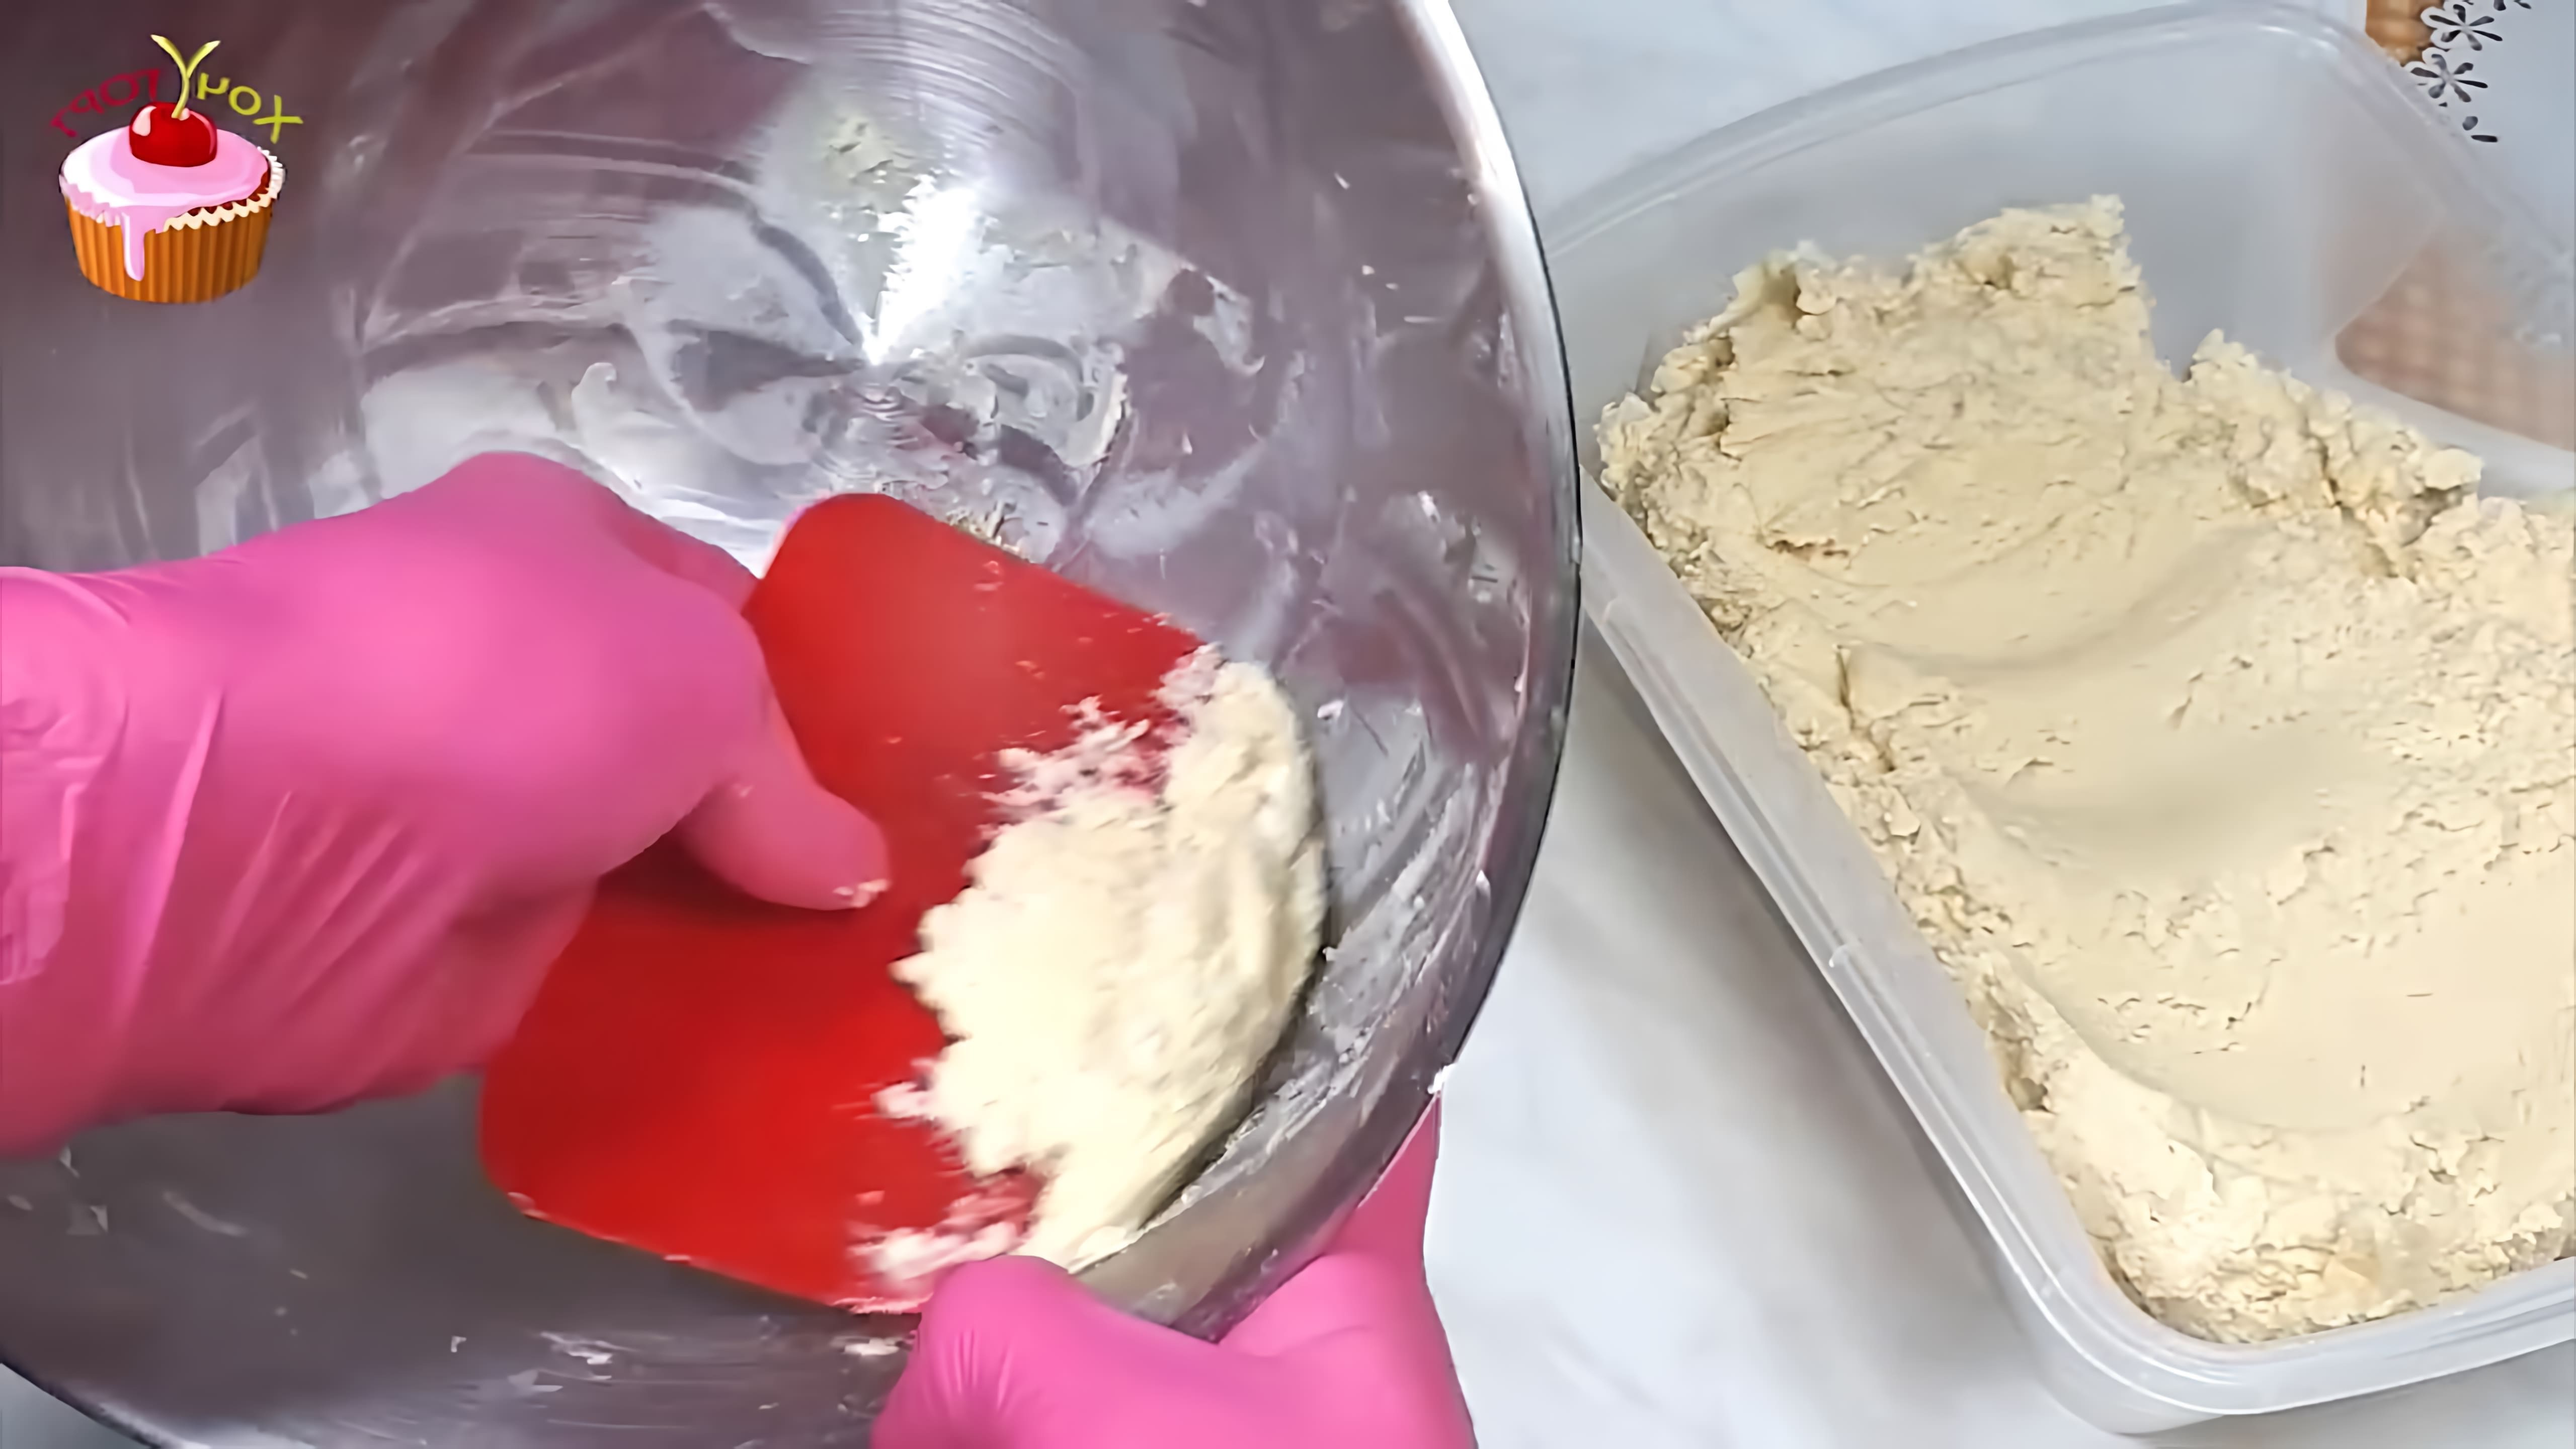 В этом видео демонстрируется рецепт универсального песочного теста, которое можно использовать для приготовления различных видов выпечки, включая печенье, тарталетки, пироги, тарты и торты